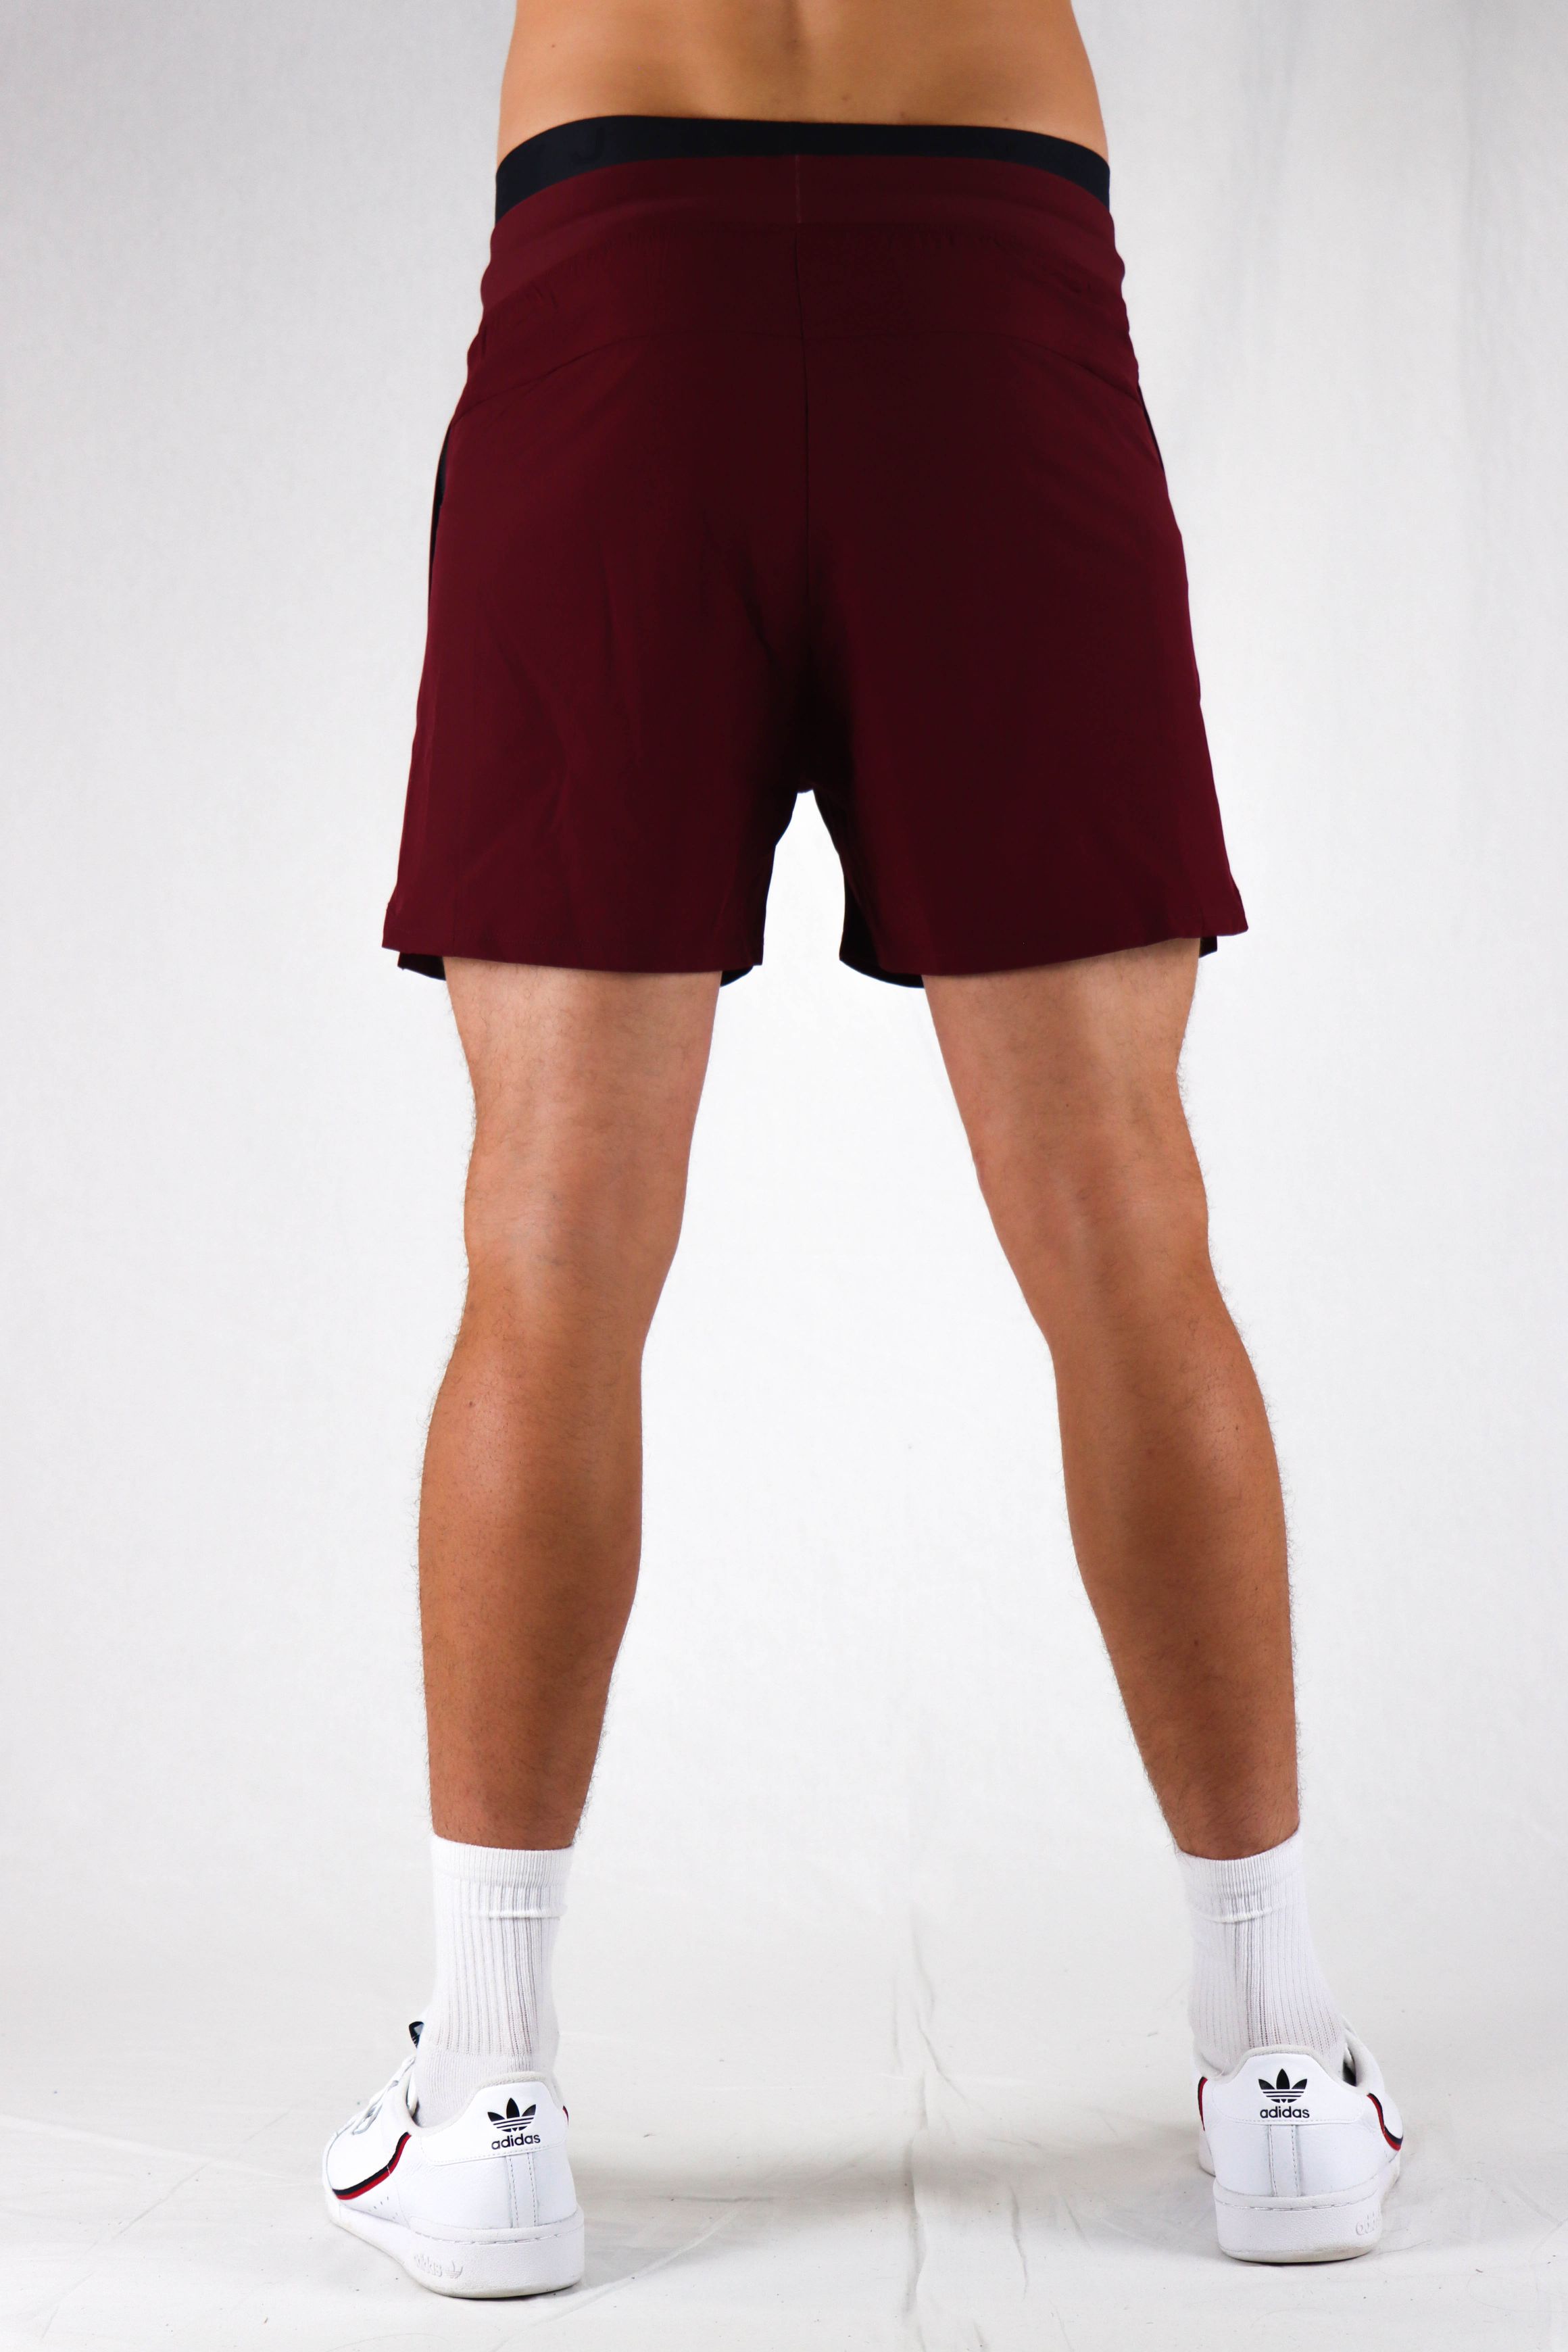 Oxyfit Mens Quad Shorts - Deep Maroon